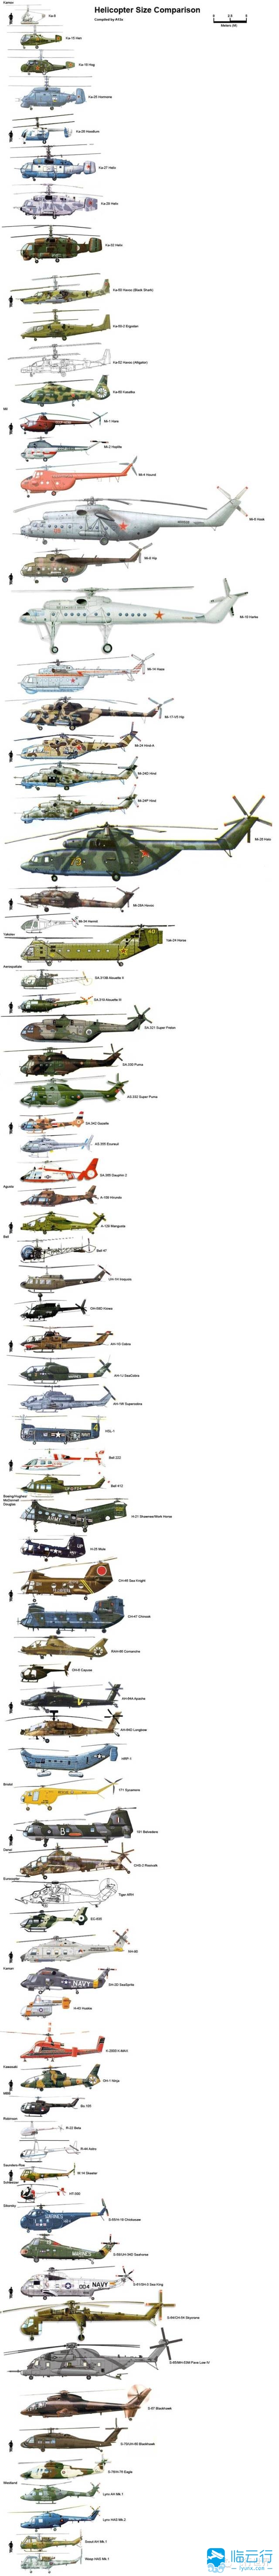 一张图看懂全球主流直升机大小及型号